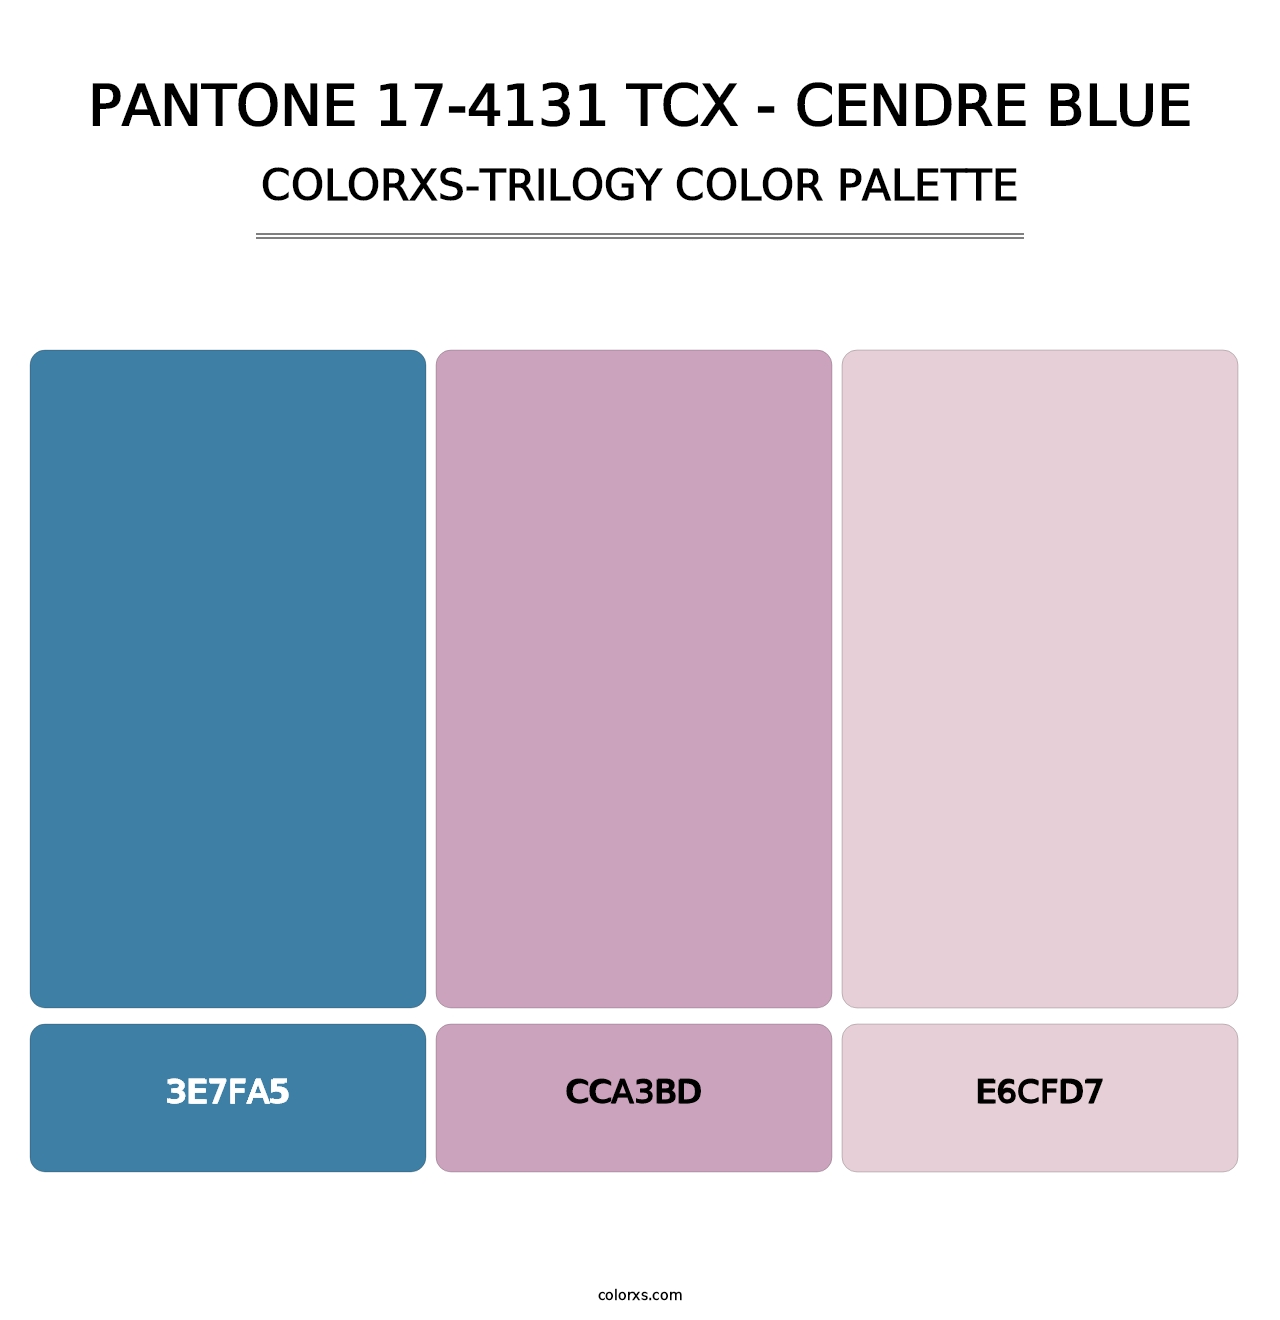 PANTONE 17-4131 TCX - Cendre Blue - Colorxs Trilogy Palette